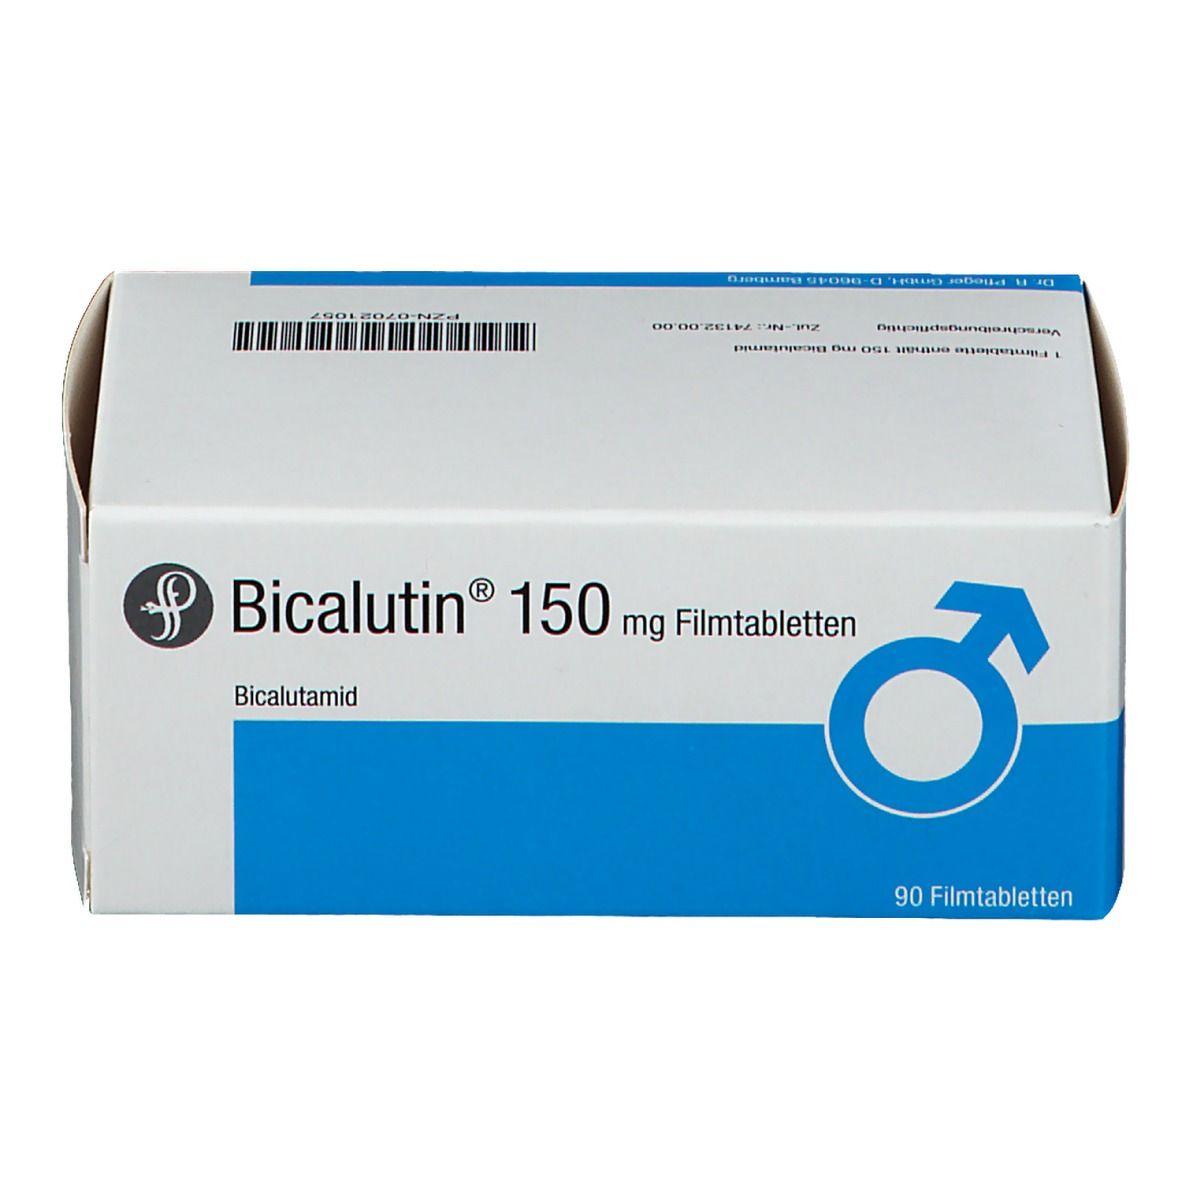 Bicalutin® 150 mg